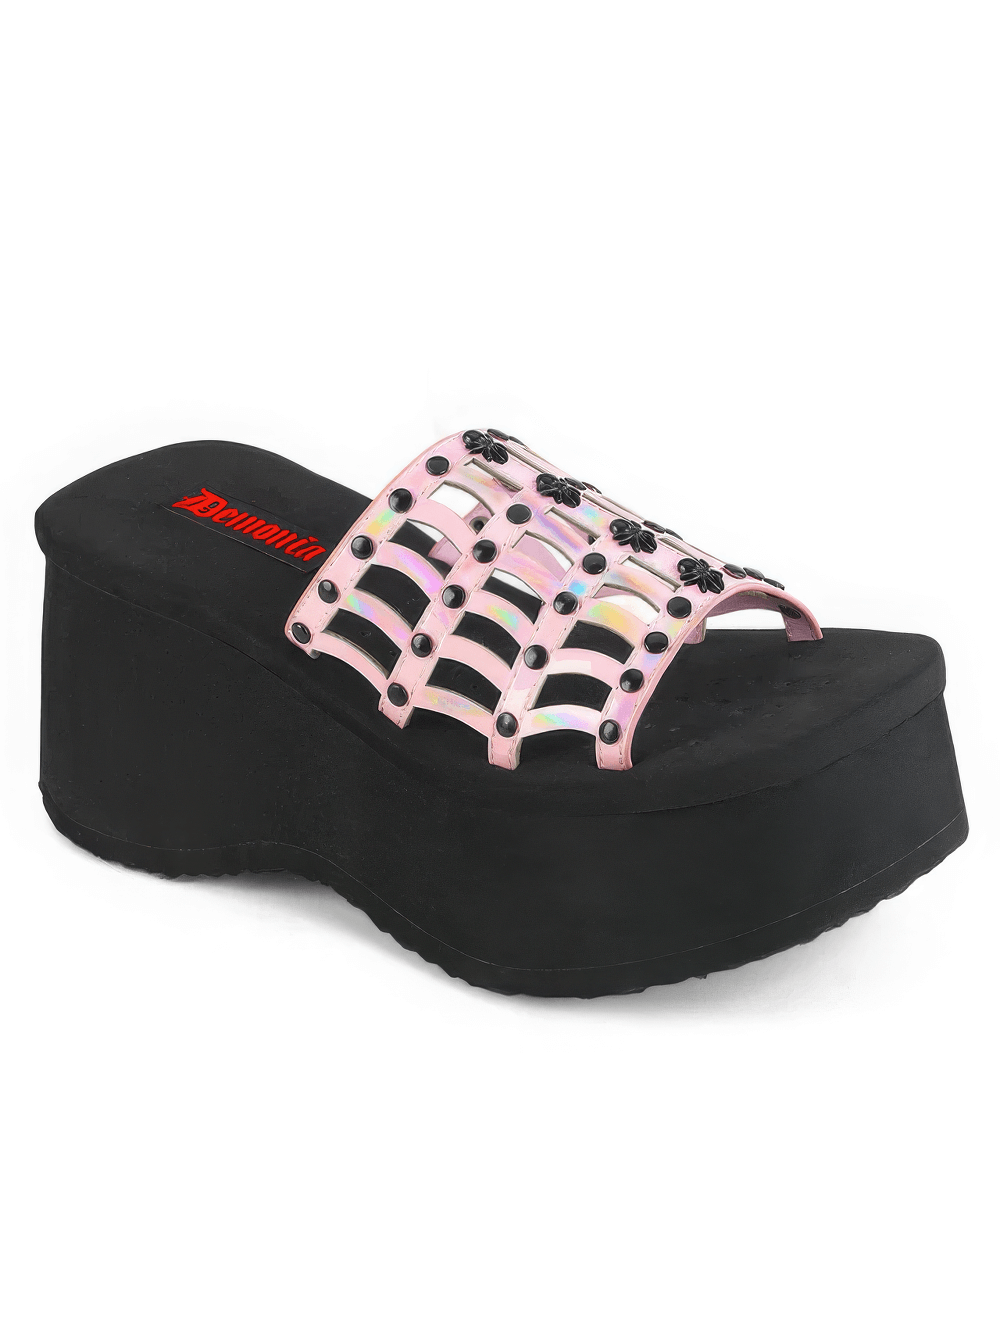 DEMONIA Pink Holo Platform Sandal with Spider Web Design